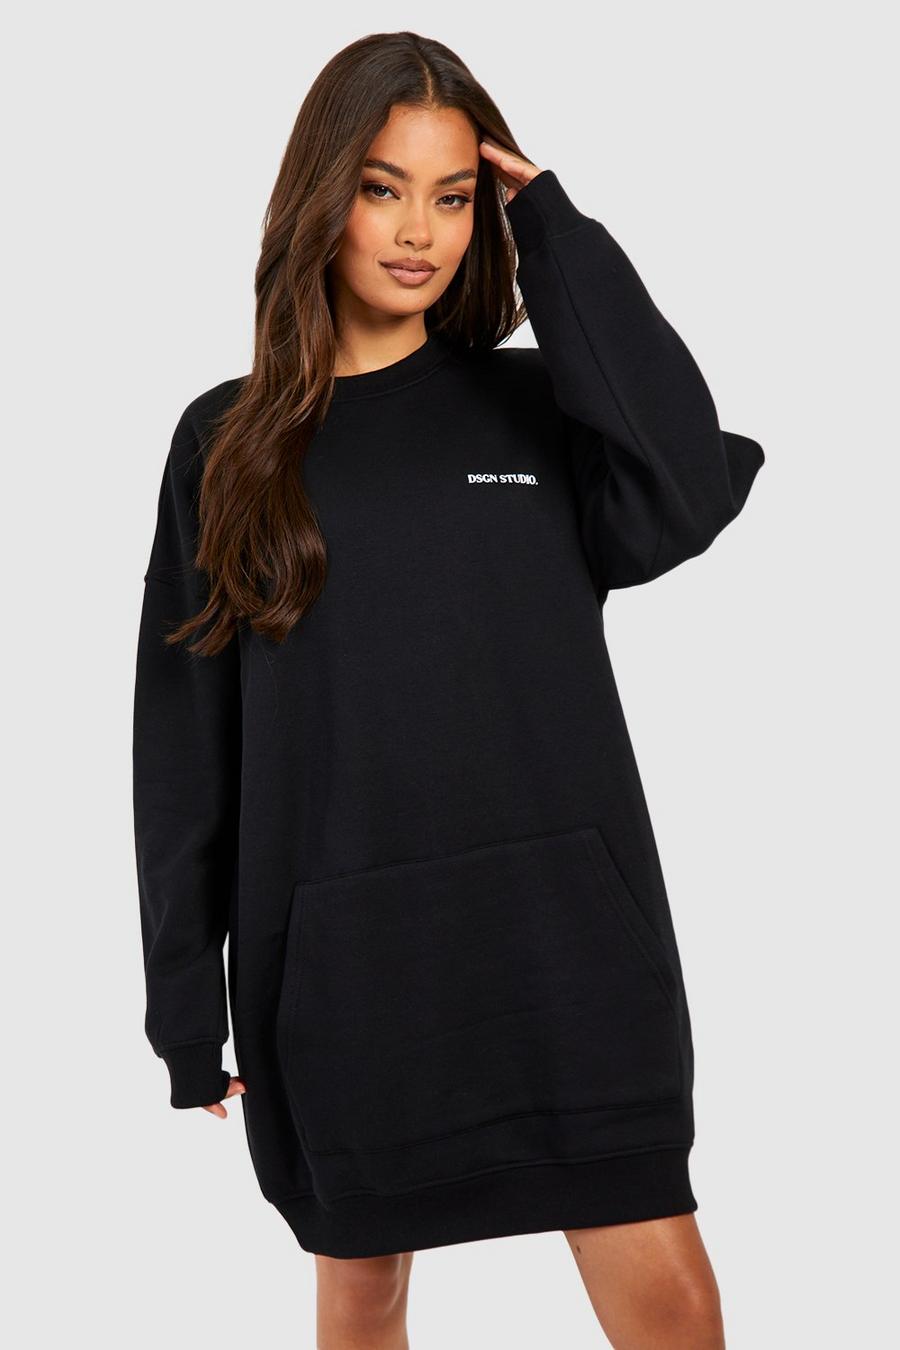 Oversize Sweatshirt-Kleid mit Dsgn Studio Tasche image number 1